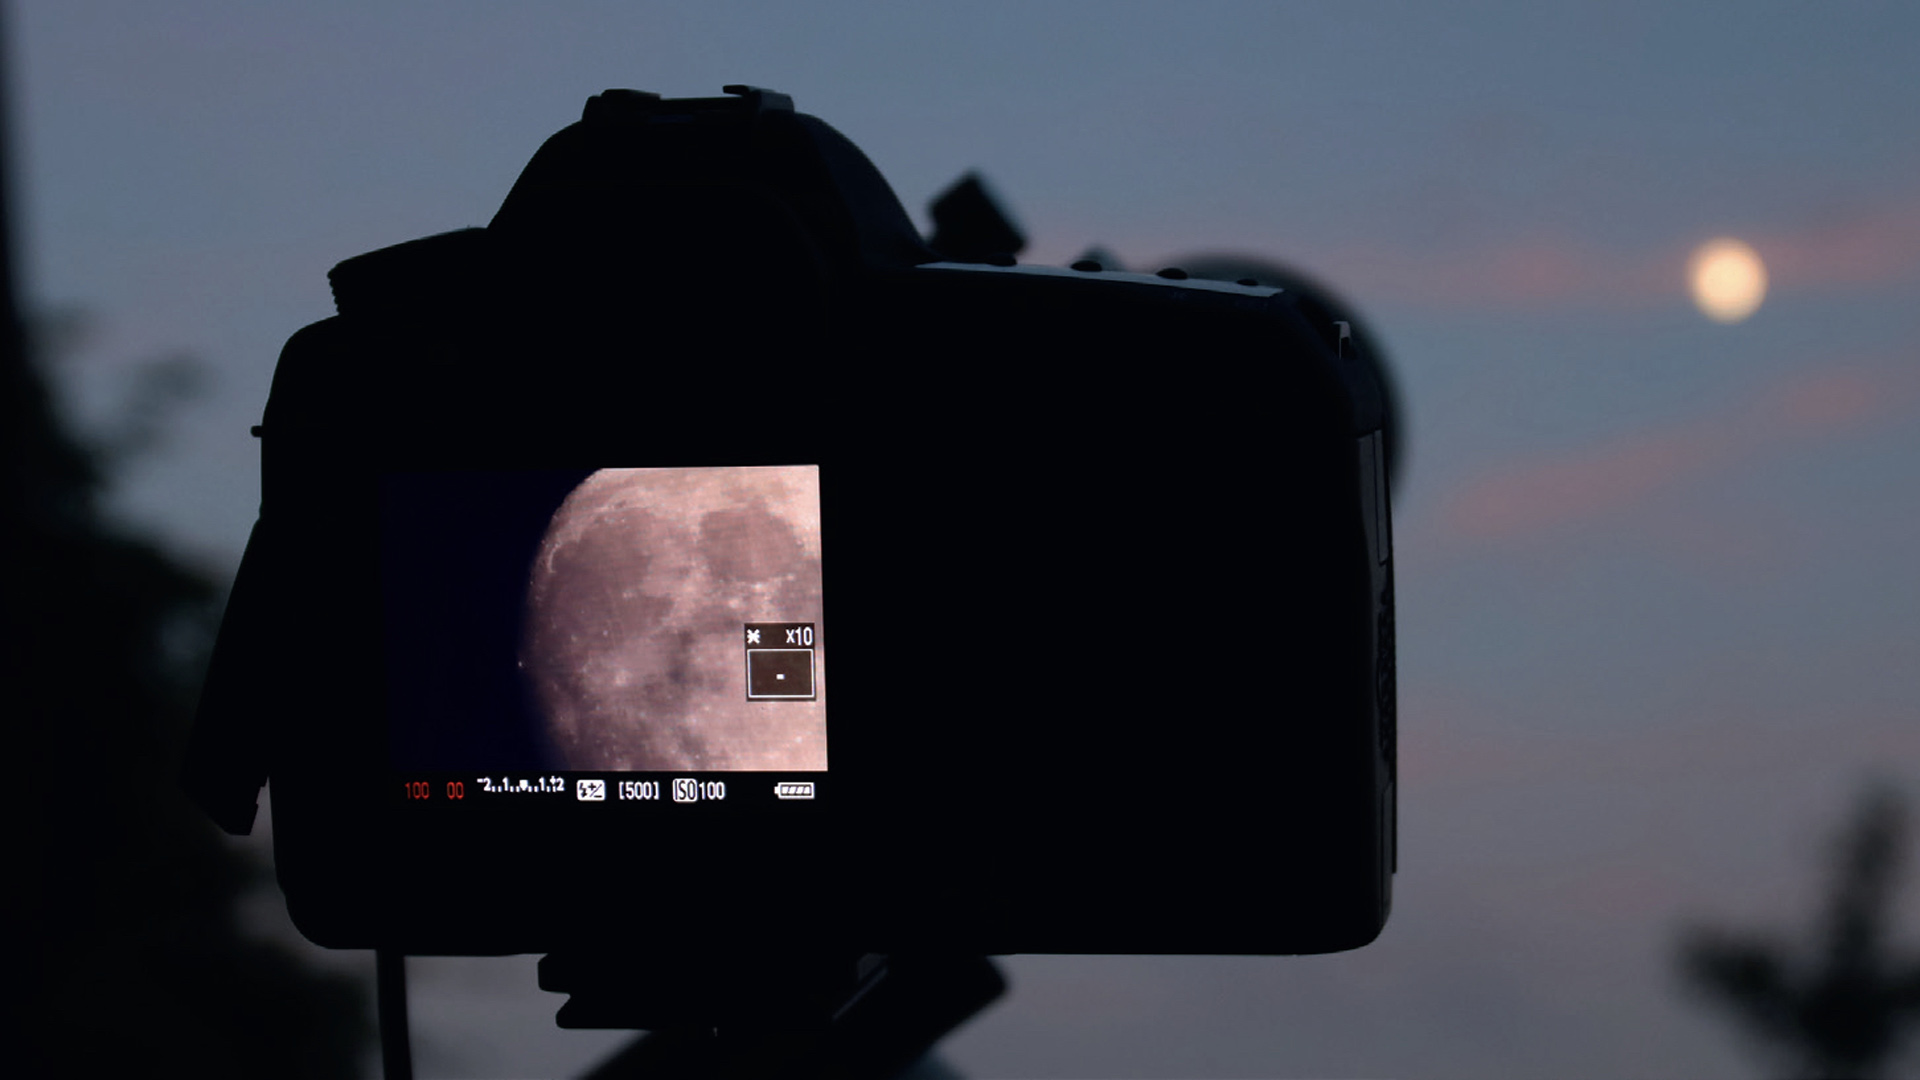 Imagens da Lua nítidas com a DSLR 
